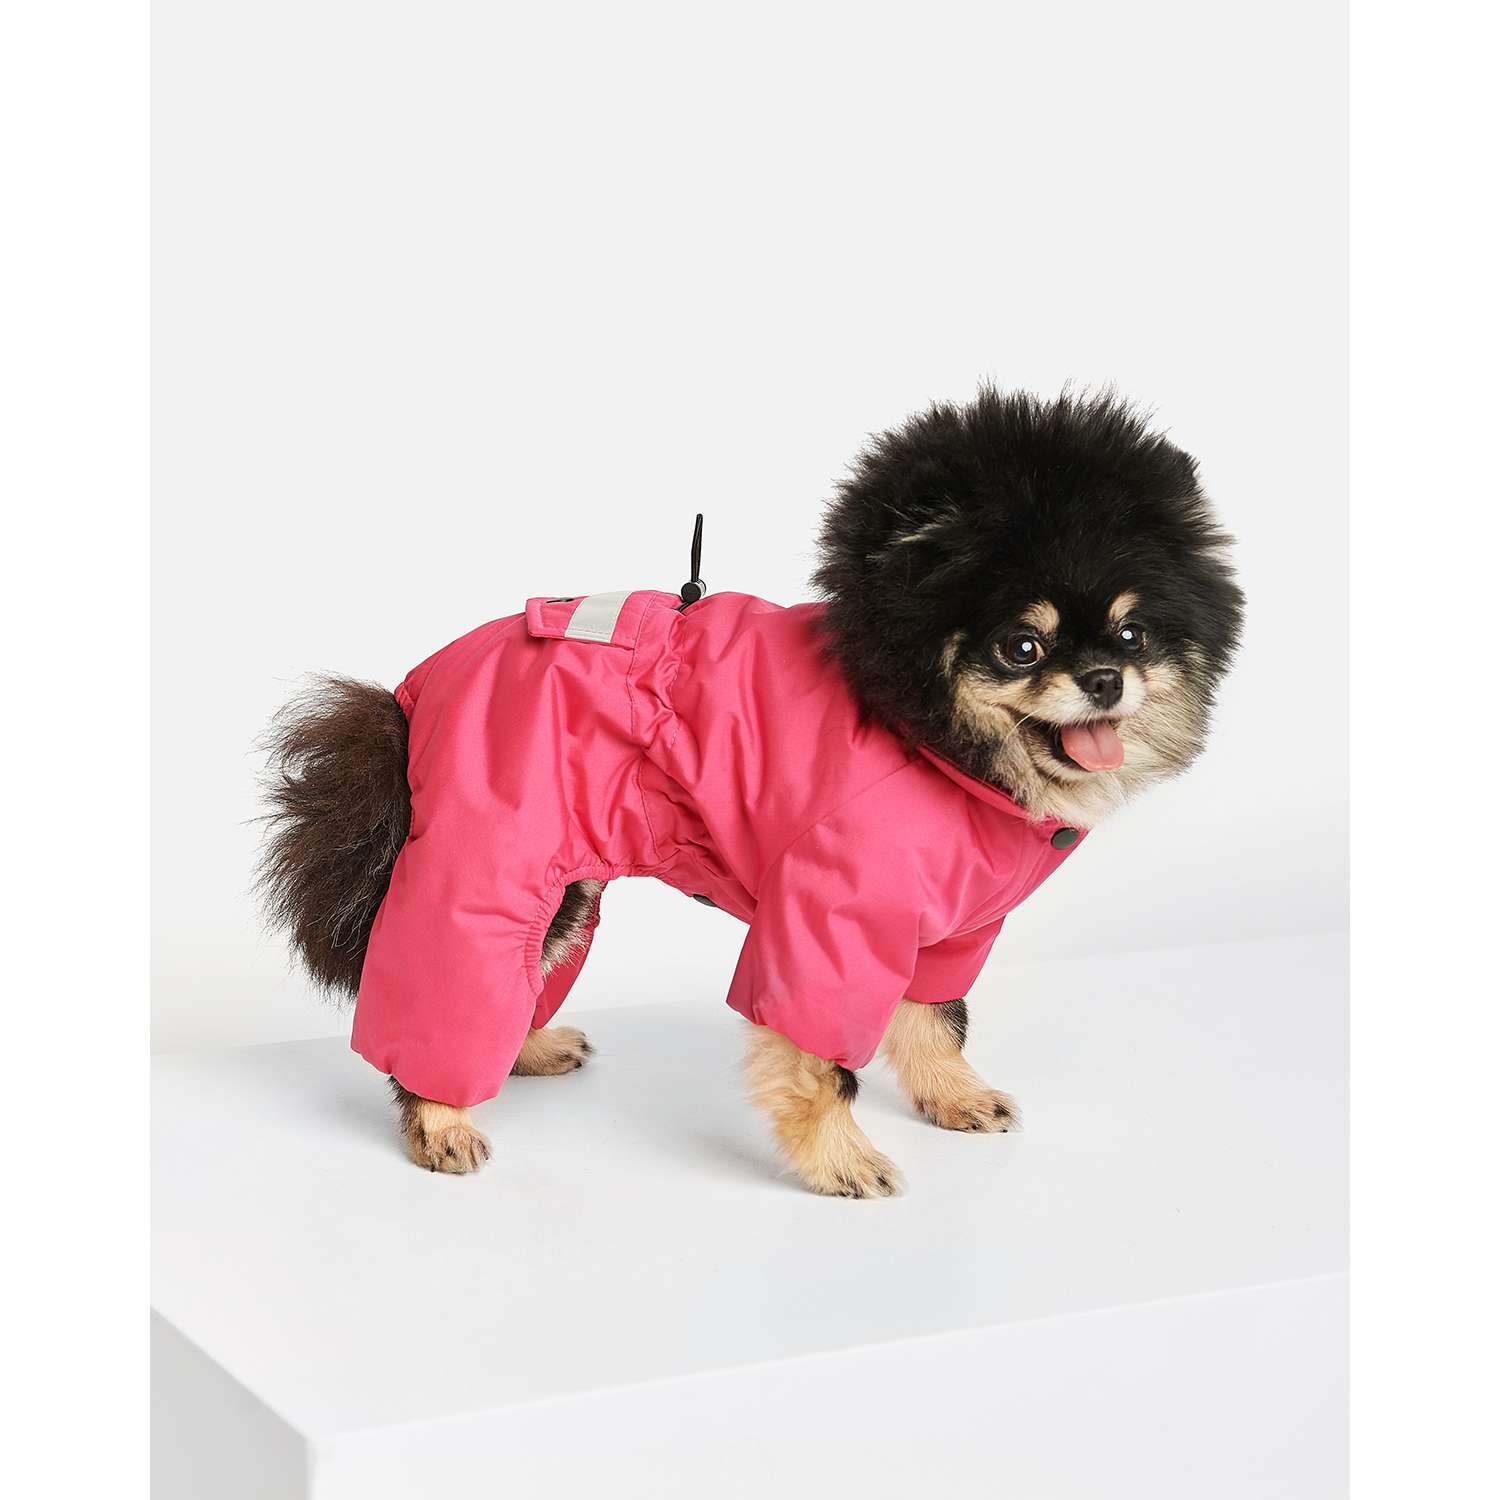 Одежды для собак, купить одежду для собак в Киеве, в интернет магазине одежды для собак - Petmarket